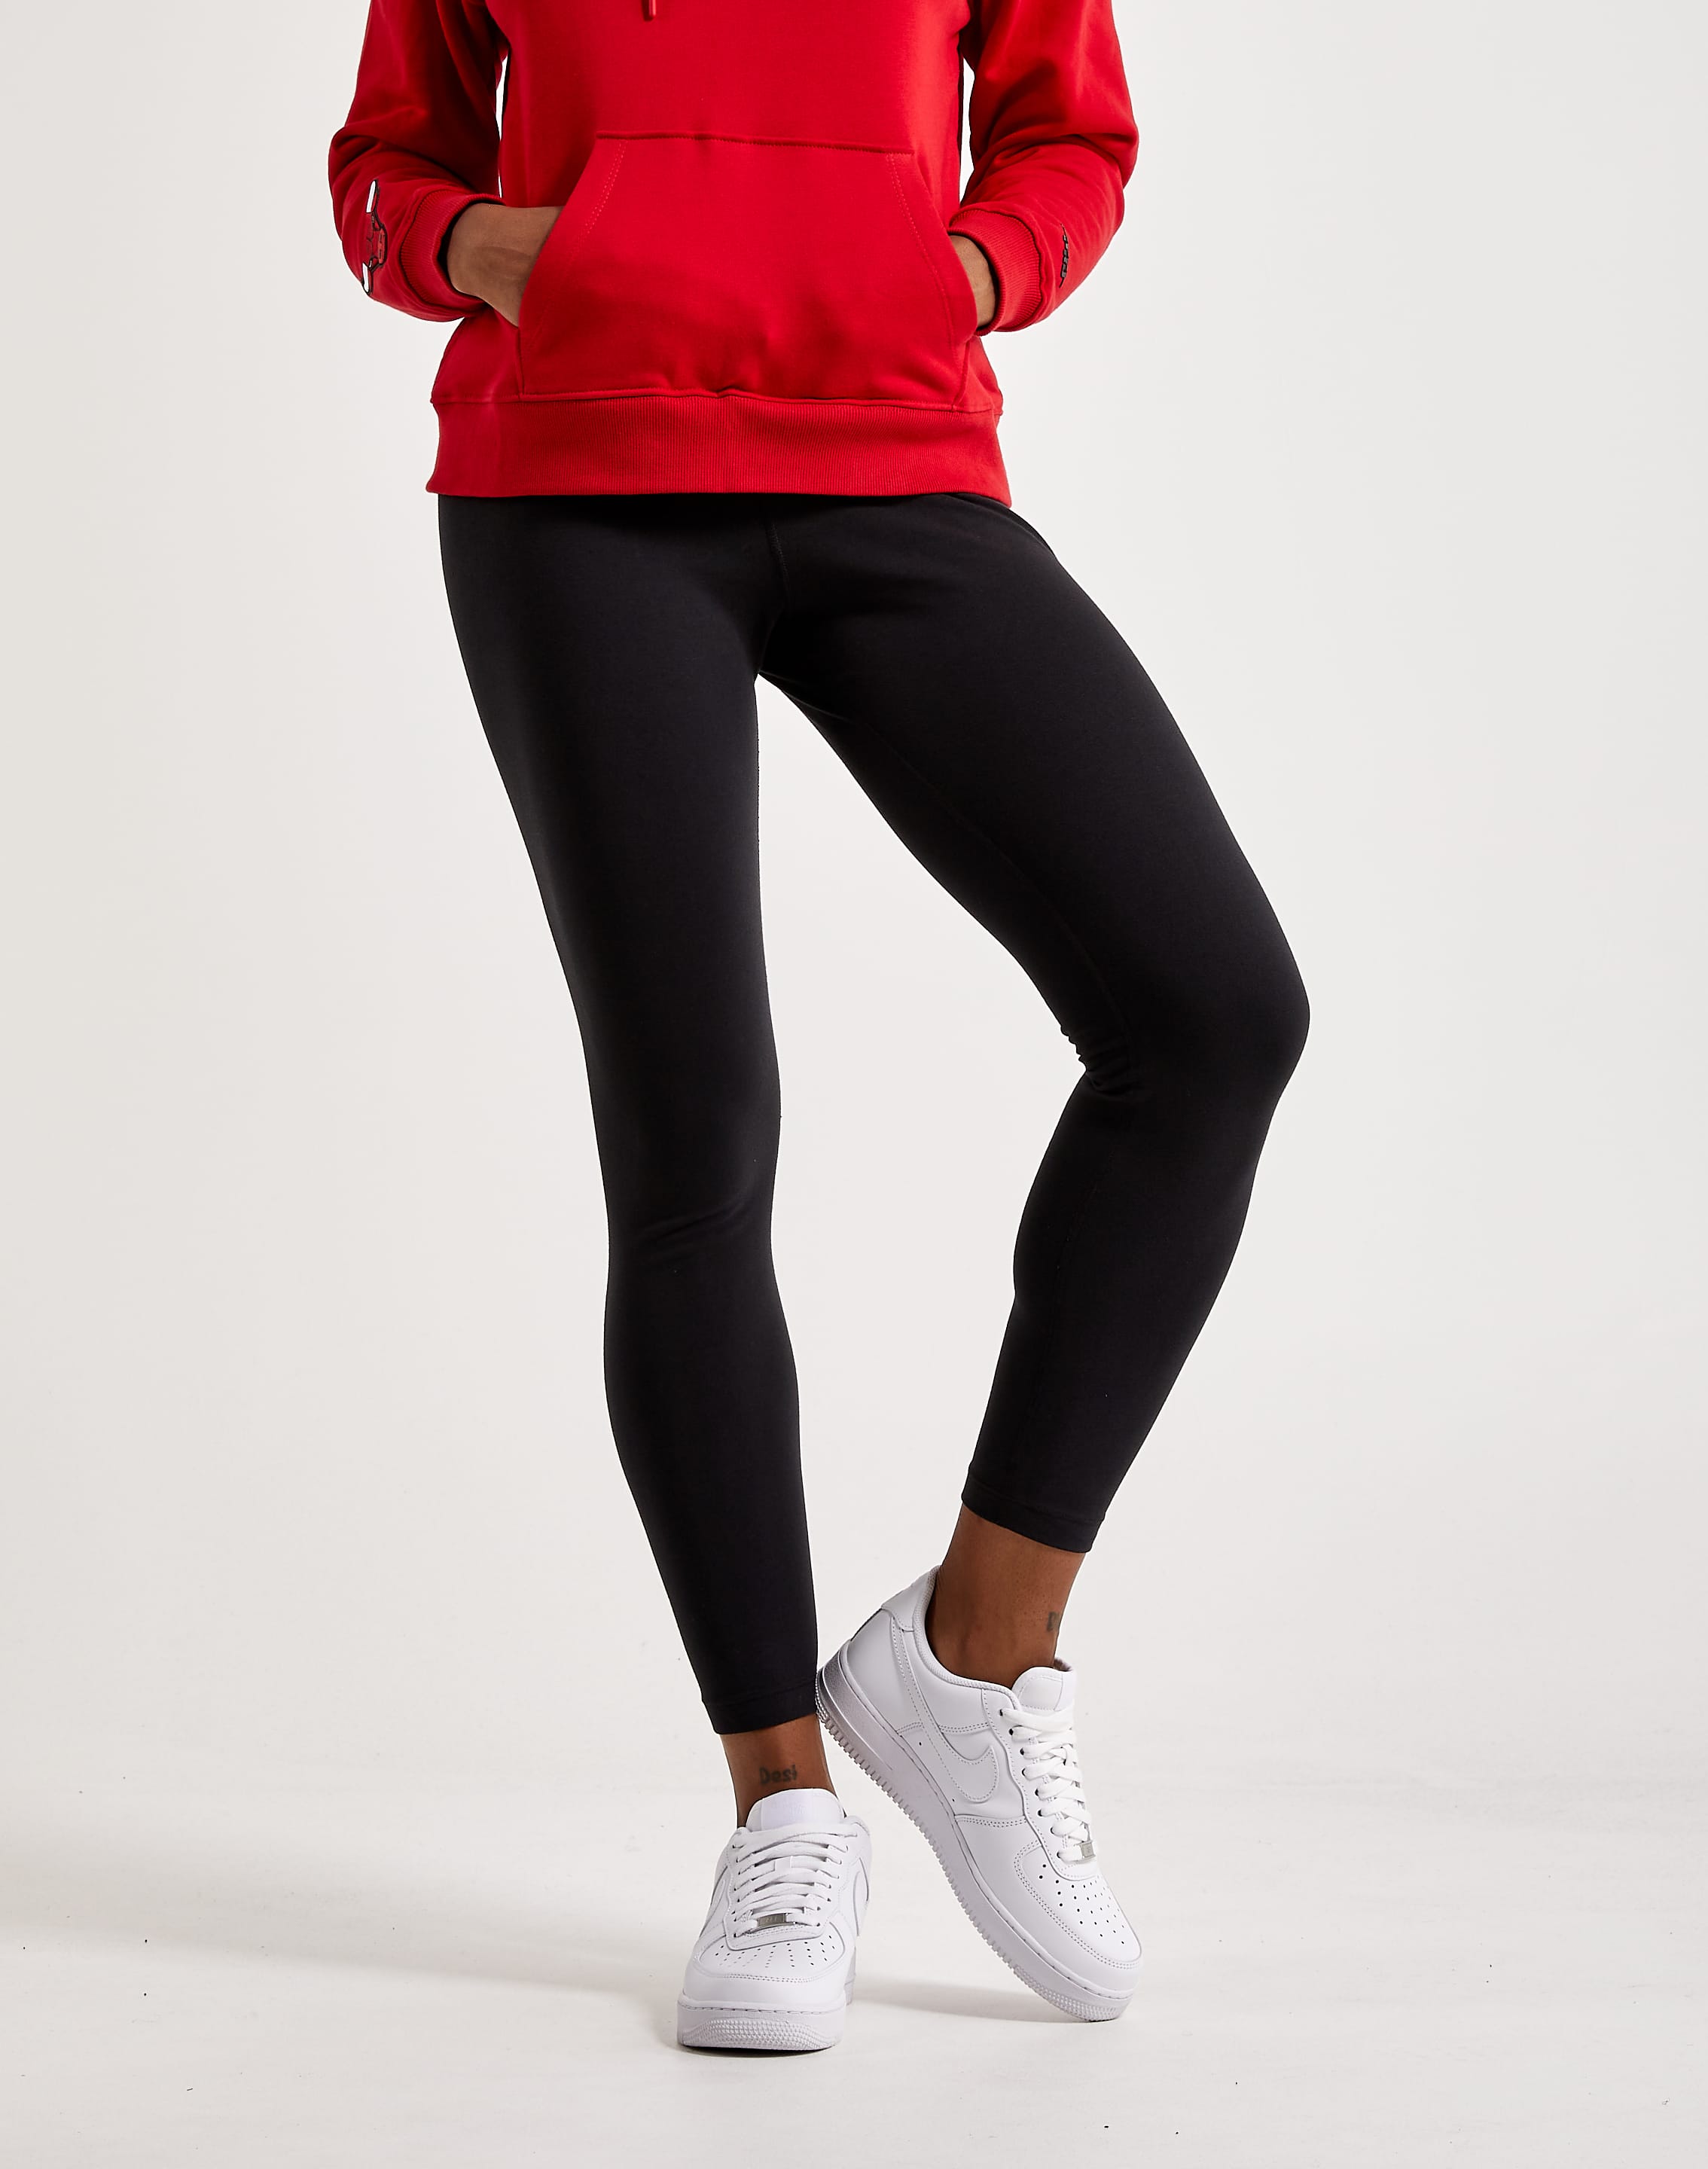 Nike Femme Leggings